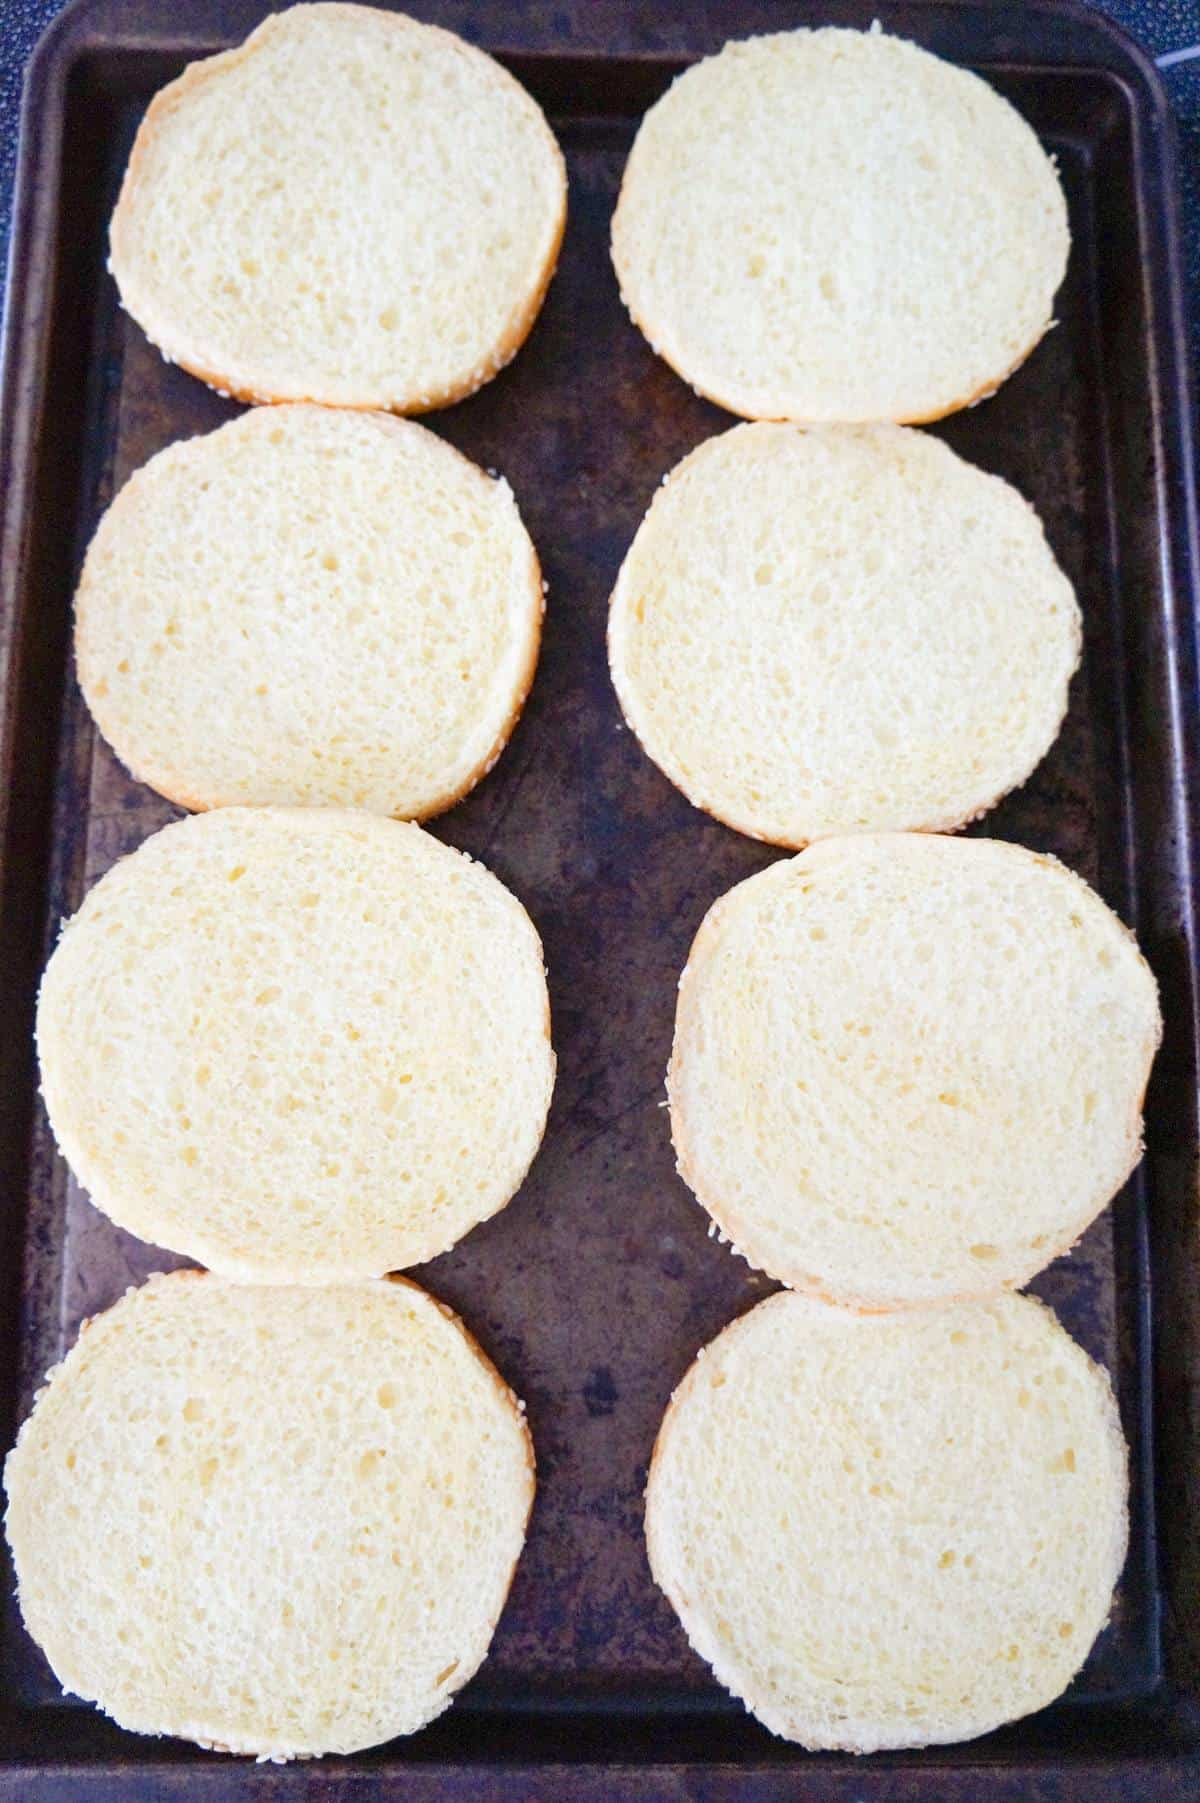 Brioche buns on a baking sheet